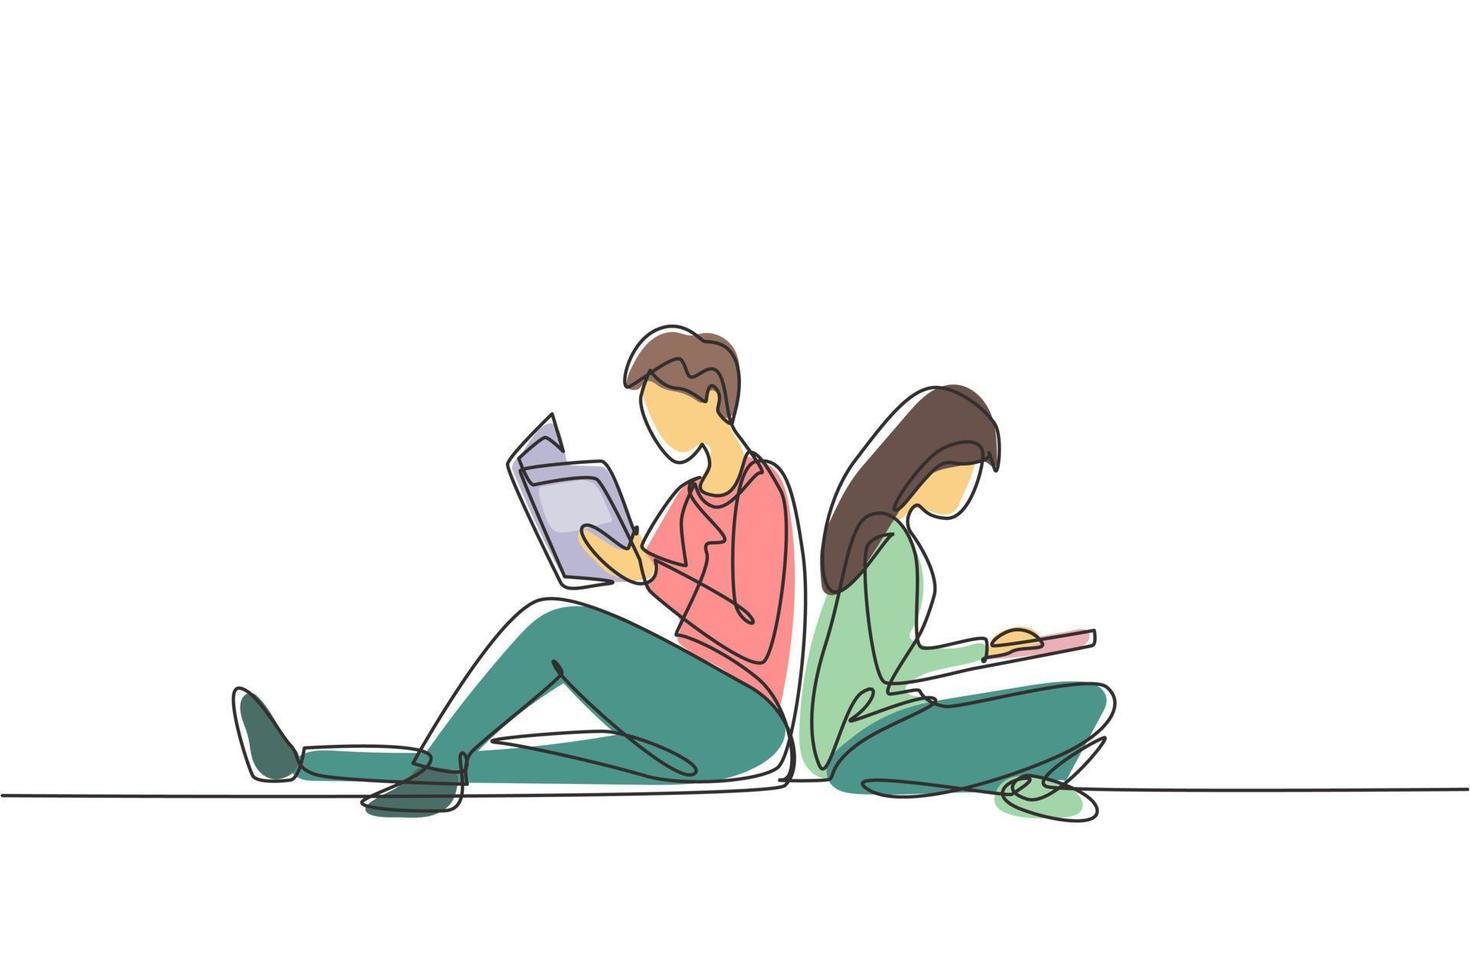 enda kontinuerlig linjeteckning par studenter som läser tillsammans, lär sig och sitter i parken. litteratur fans eller älskare, utbildning koncept. dynamisk en rad rita grafisk design vektorillustration vektor